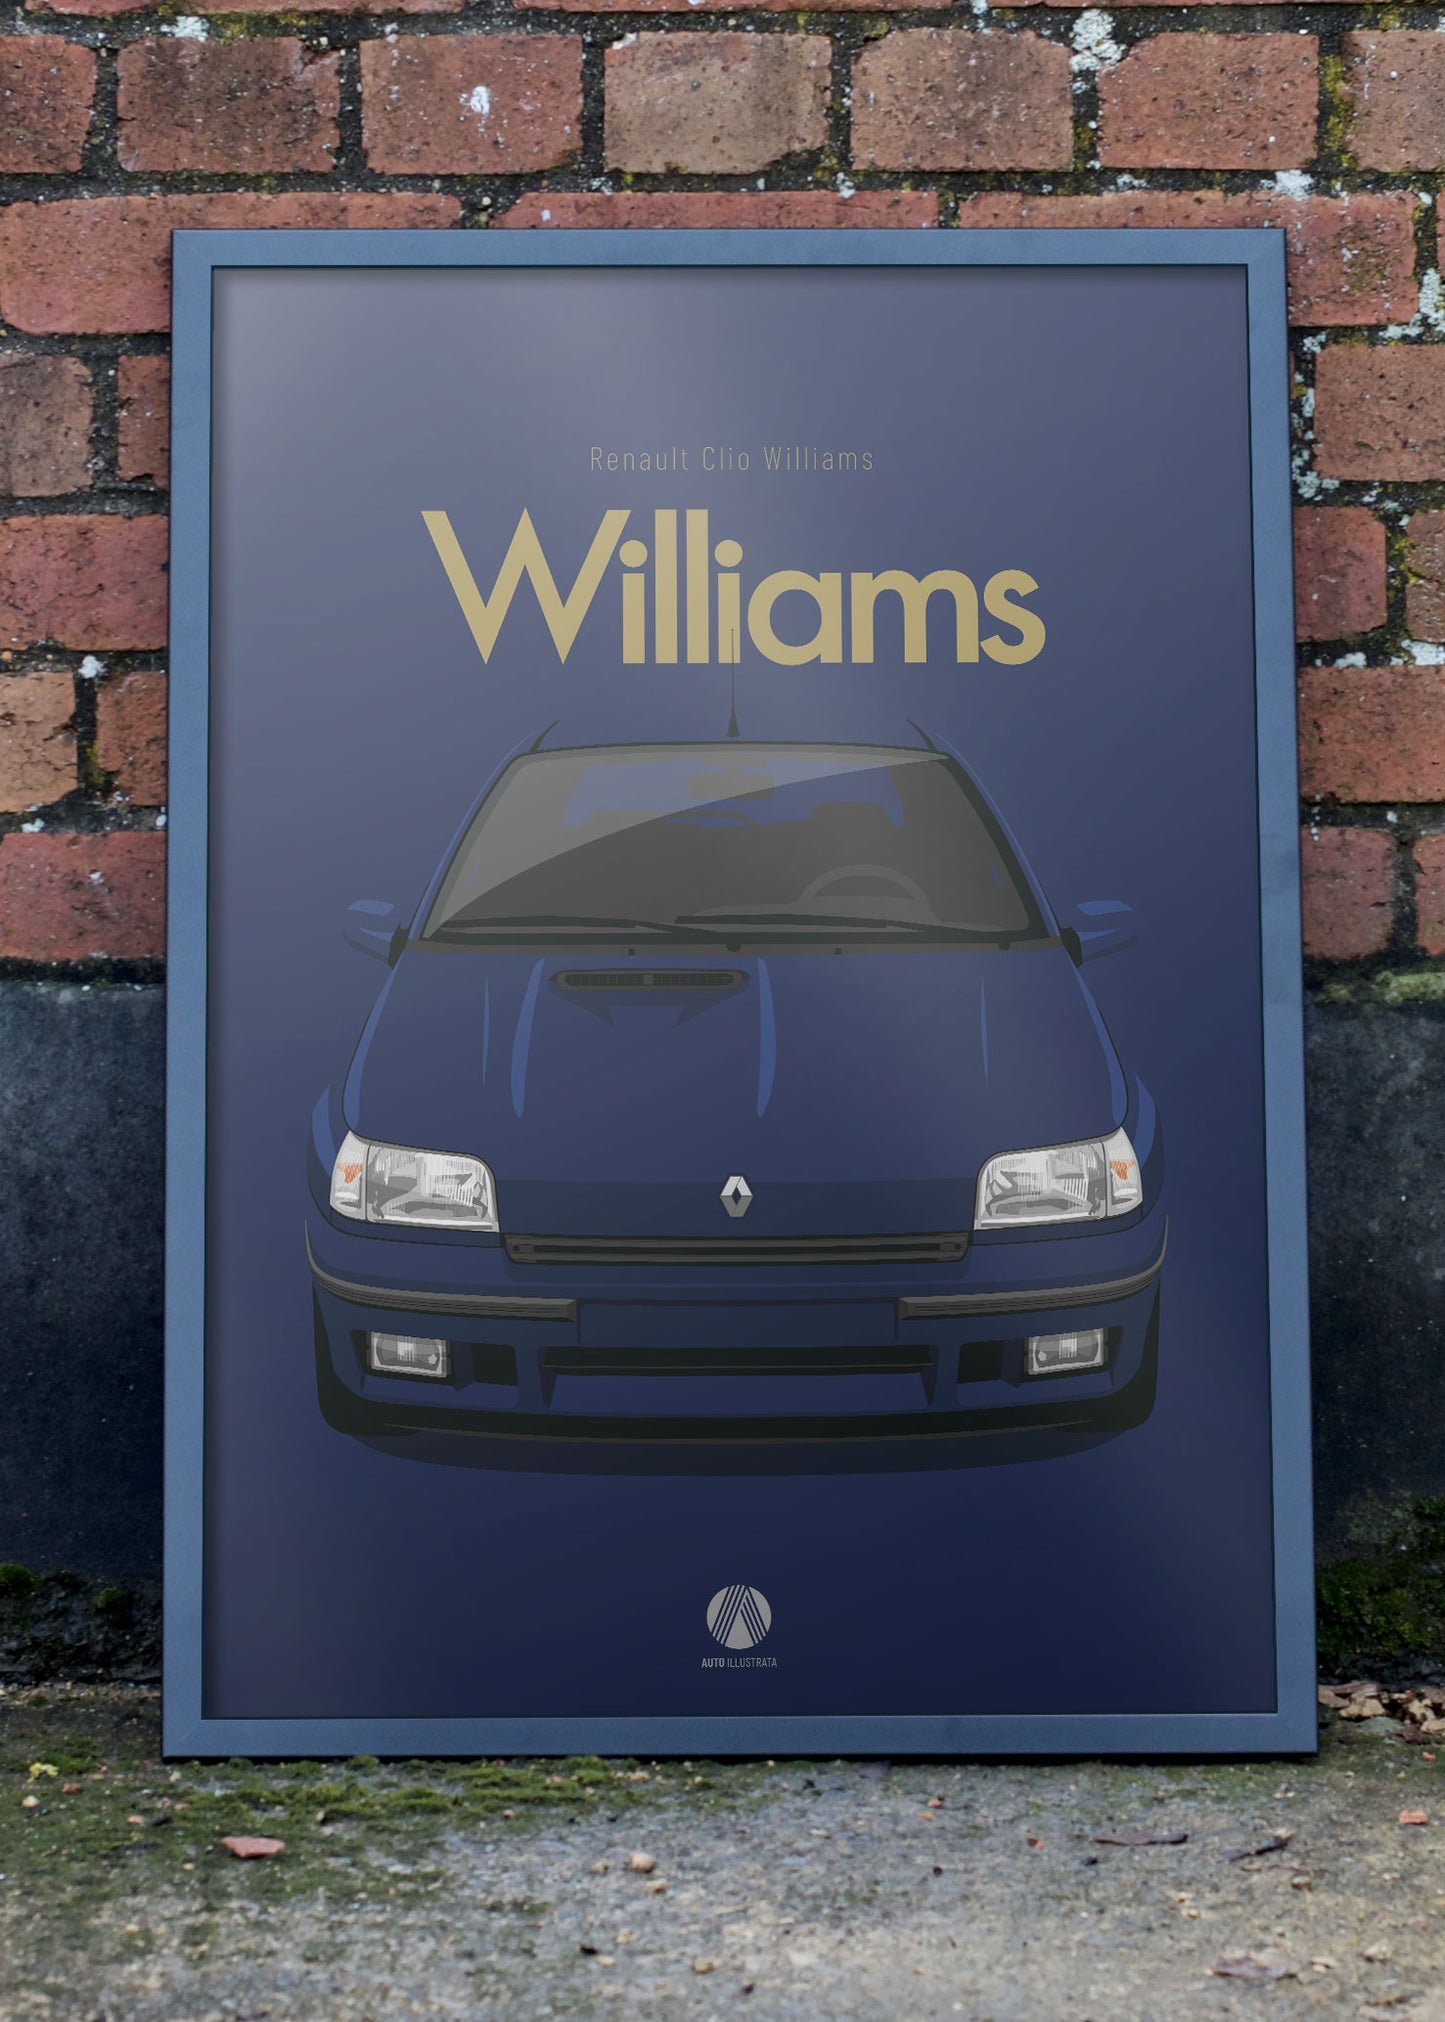 1993 Renault Clio Williams - poster print